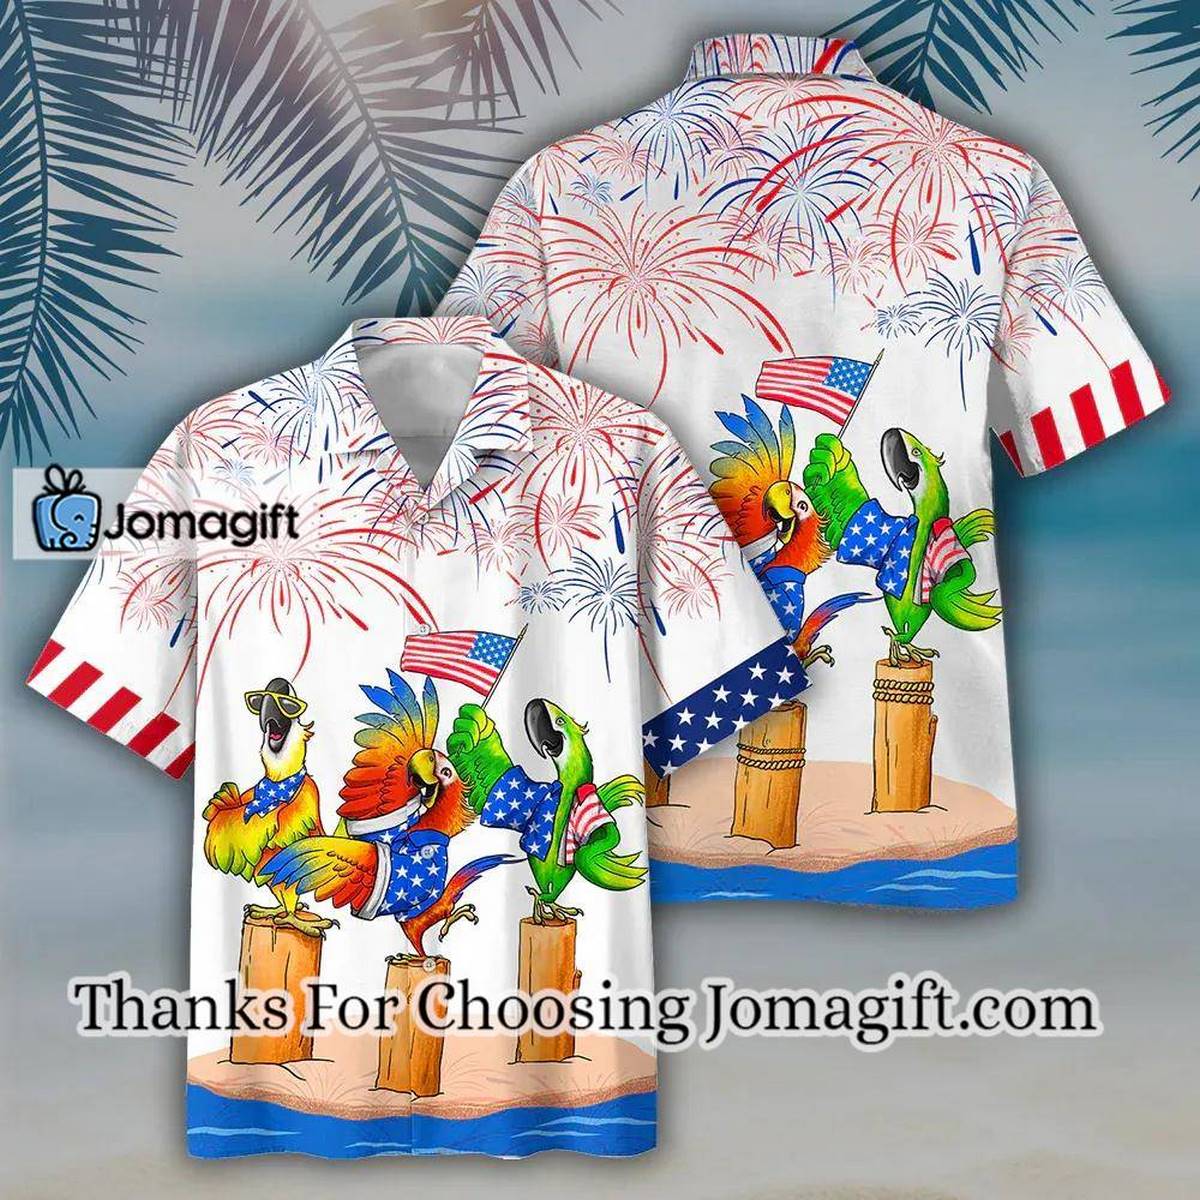 Crown Royal Hawaiian Shirt - Jomagift